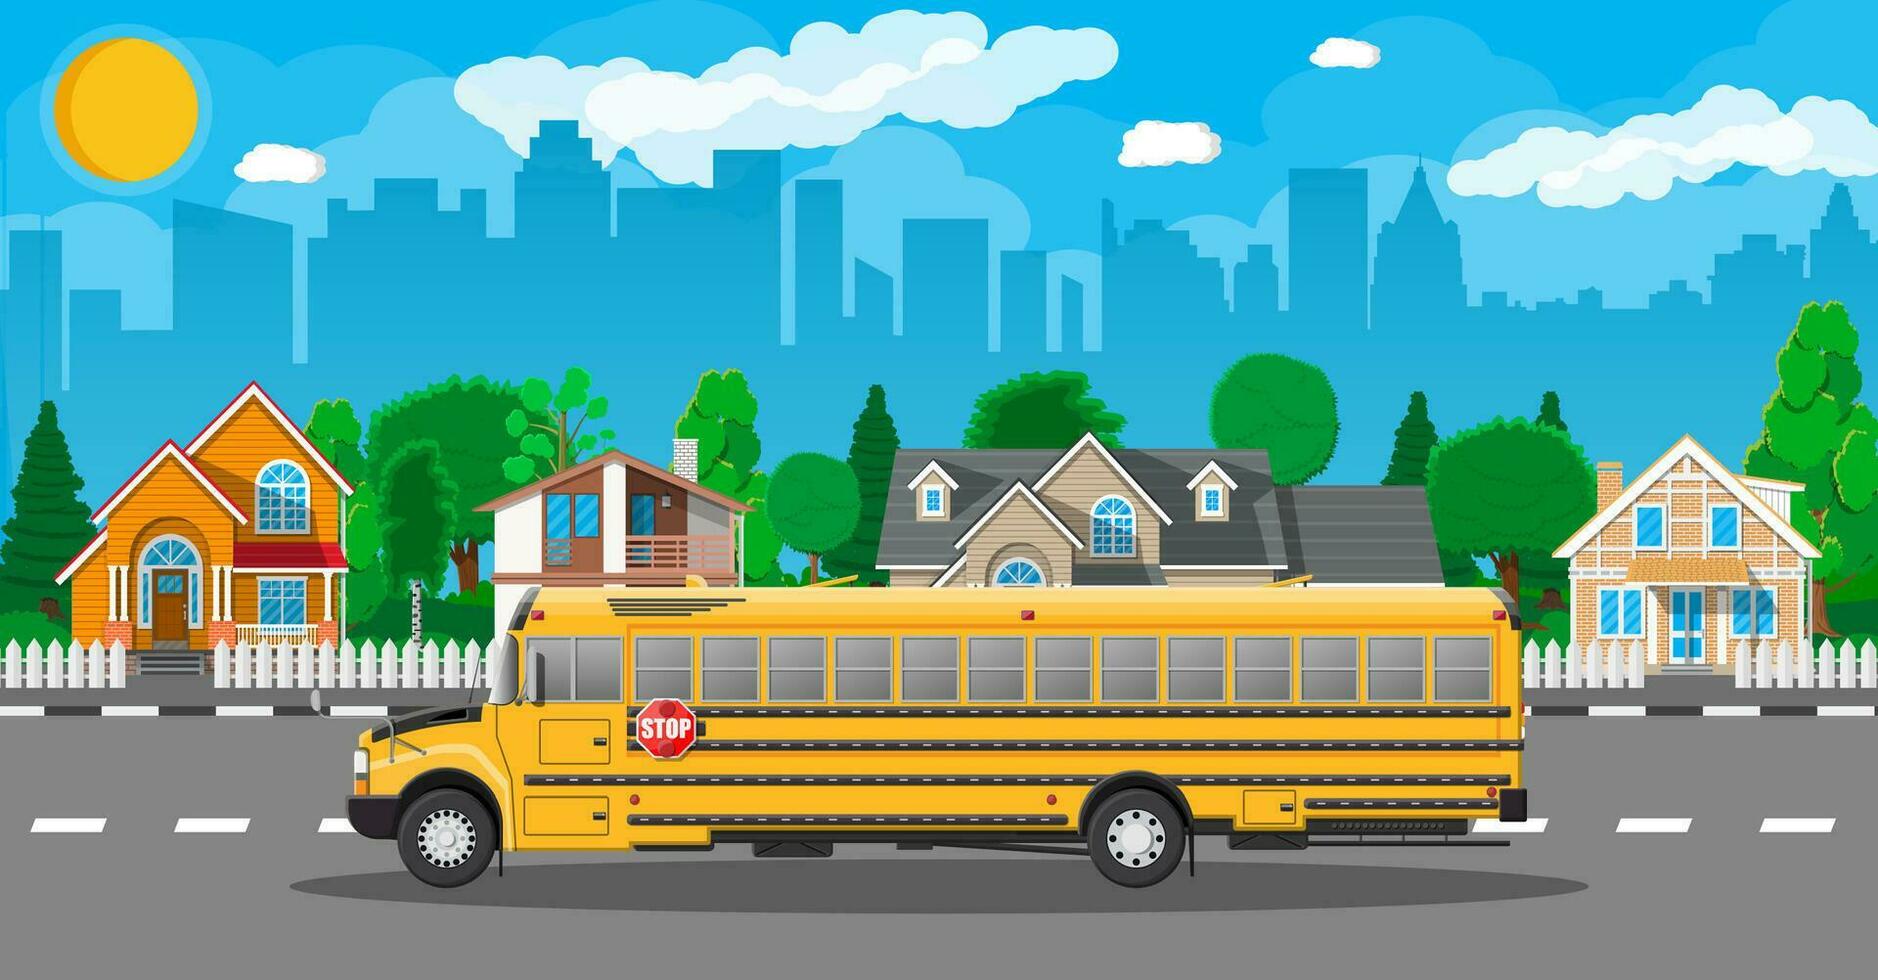 geel lang klassiek school- bus in stad. kinderen rijden schoolbus vervoer. stadsgezicht, weg, gebouwen, boom, lucht en zon. vector illustratie in vlak stijl